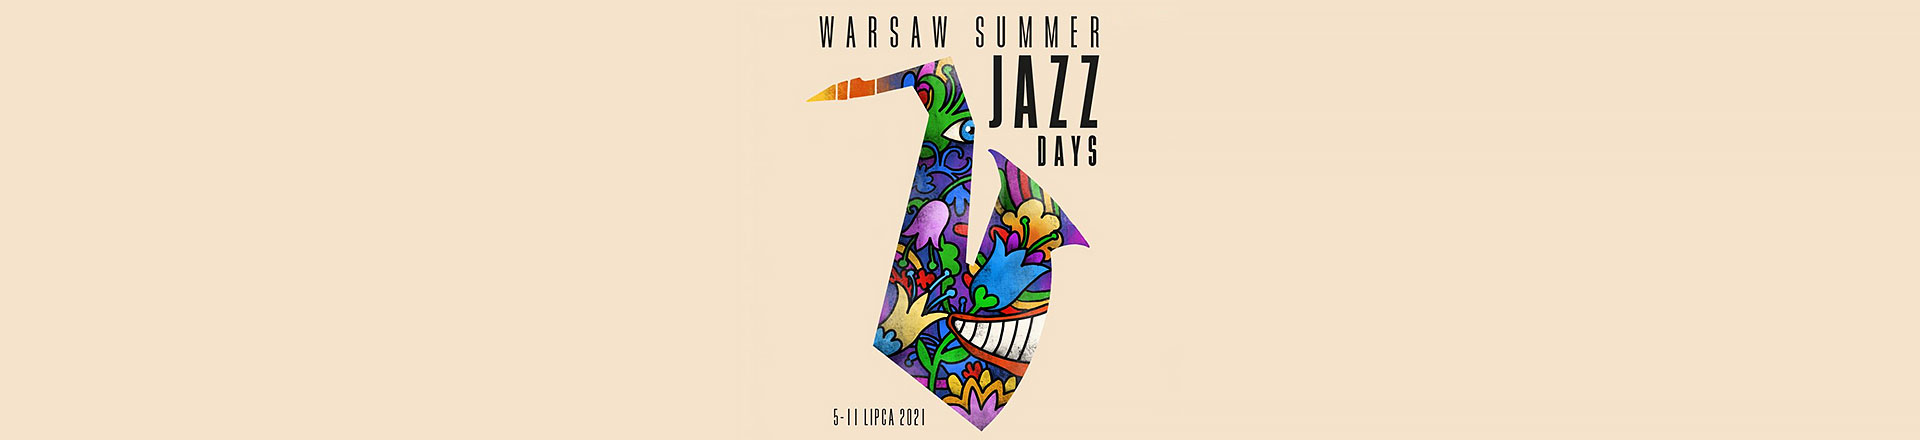 Warsaw Summer Jazz Days gości formację Antonio Sancheza